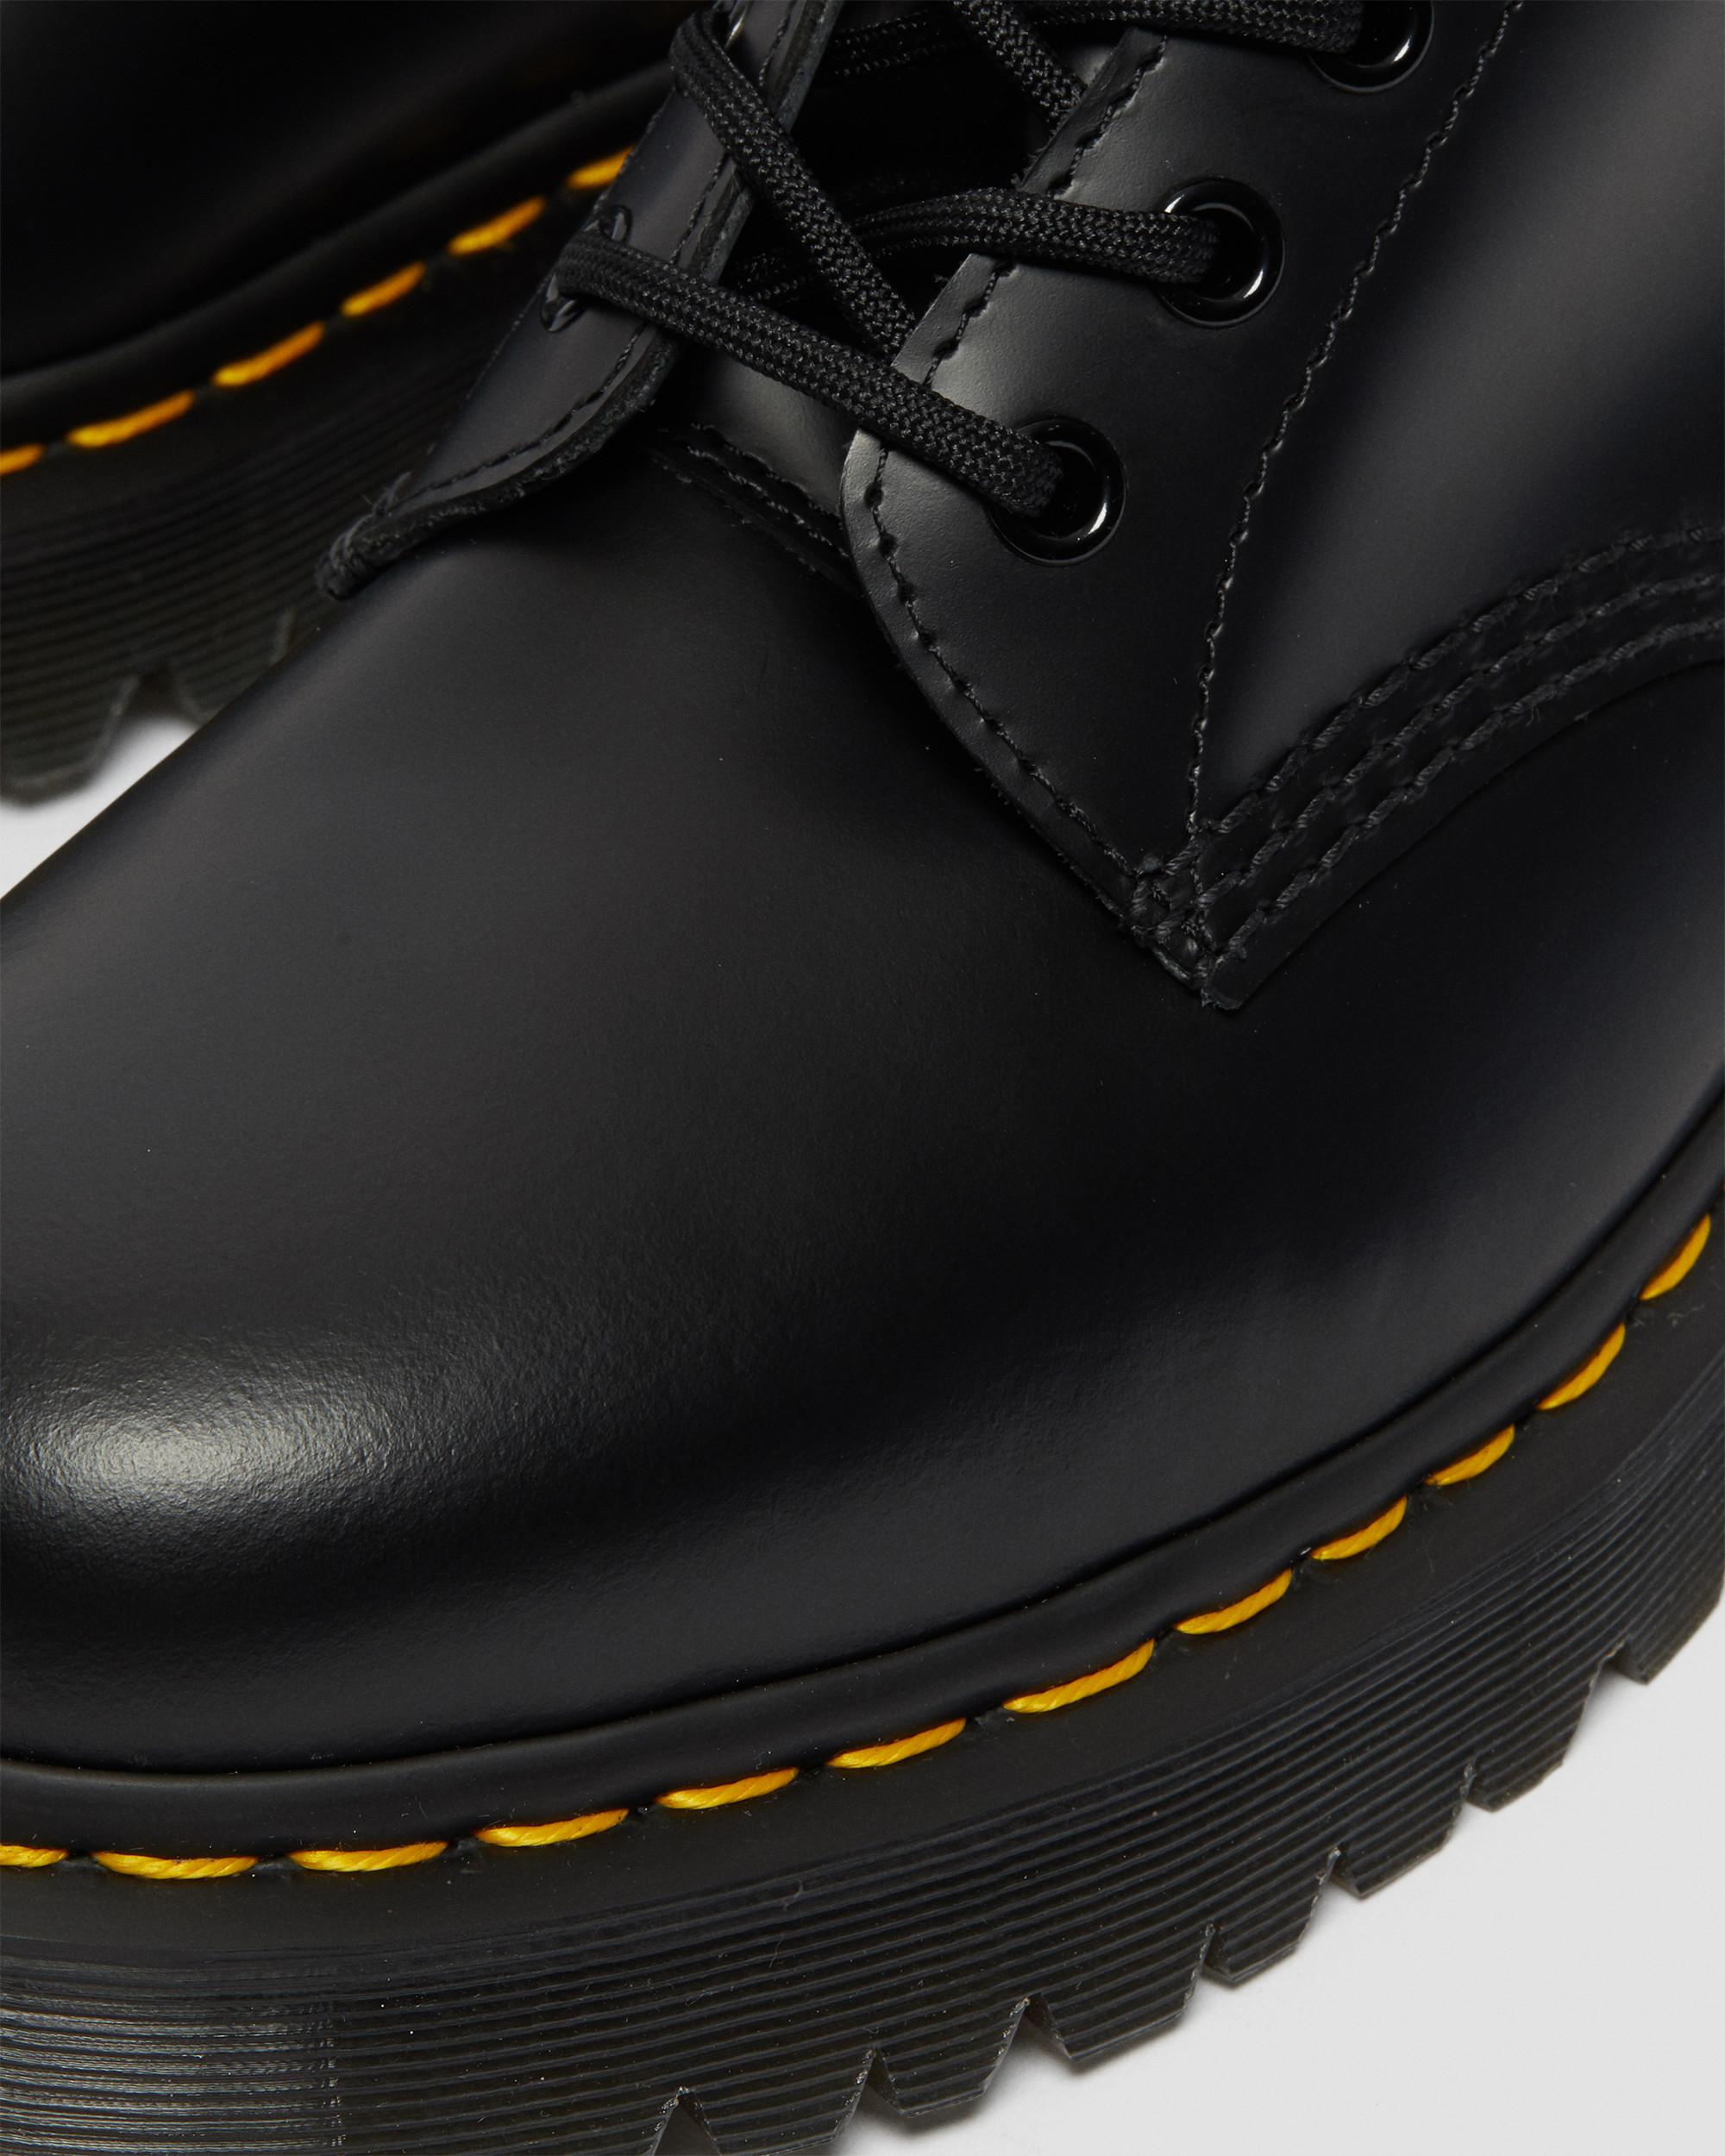 Bex Sole Boots & Shoes | Dr. Martens